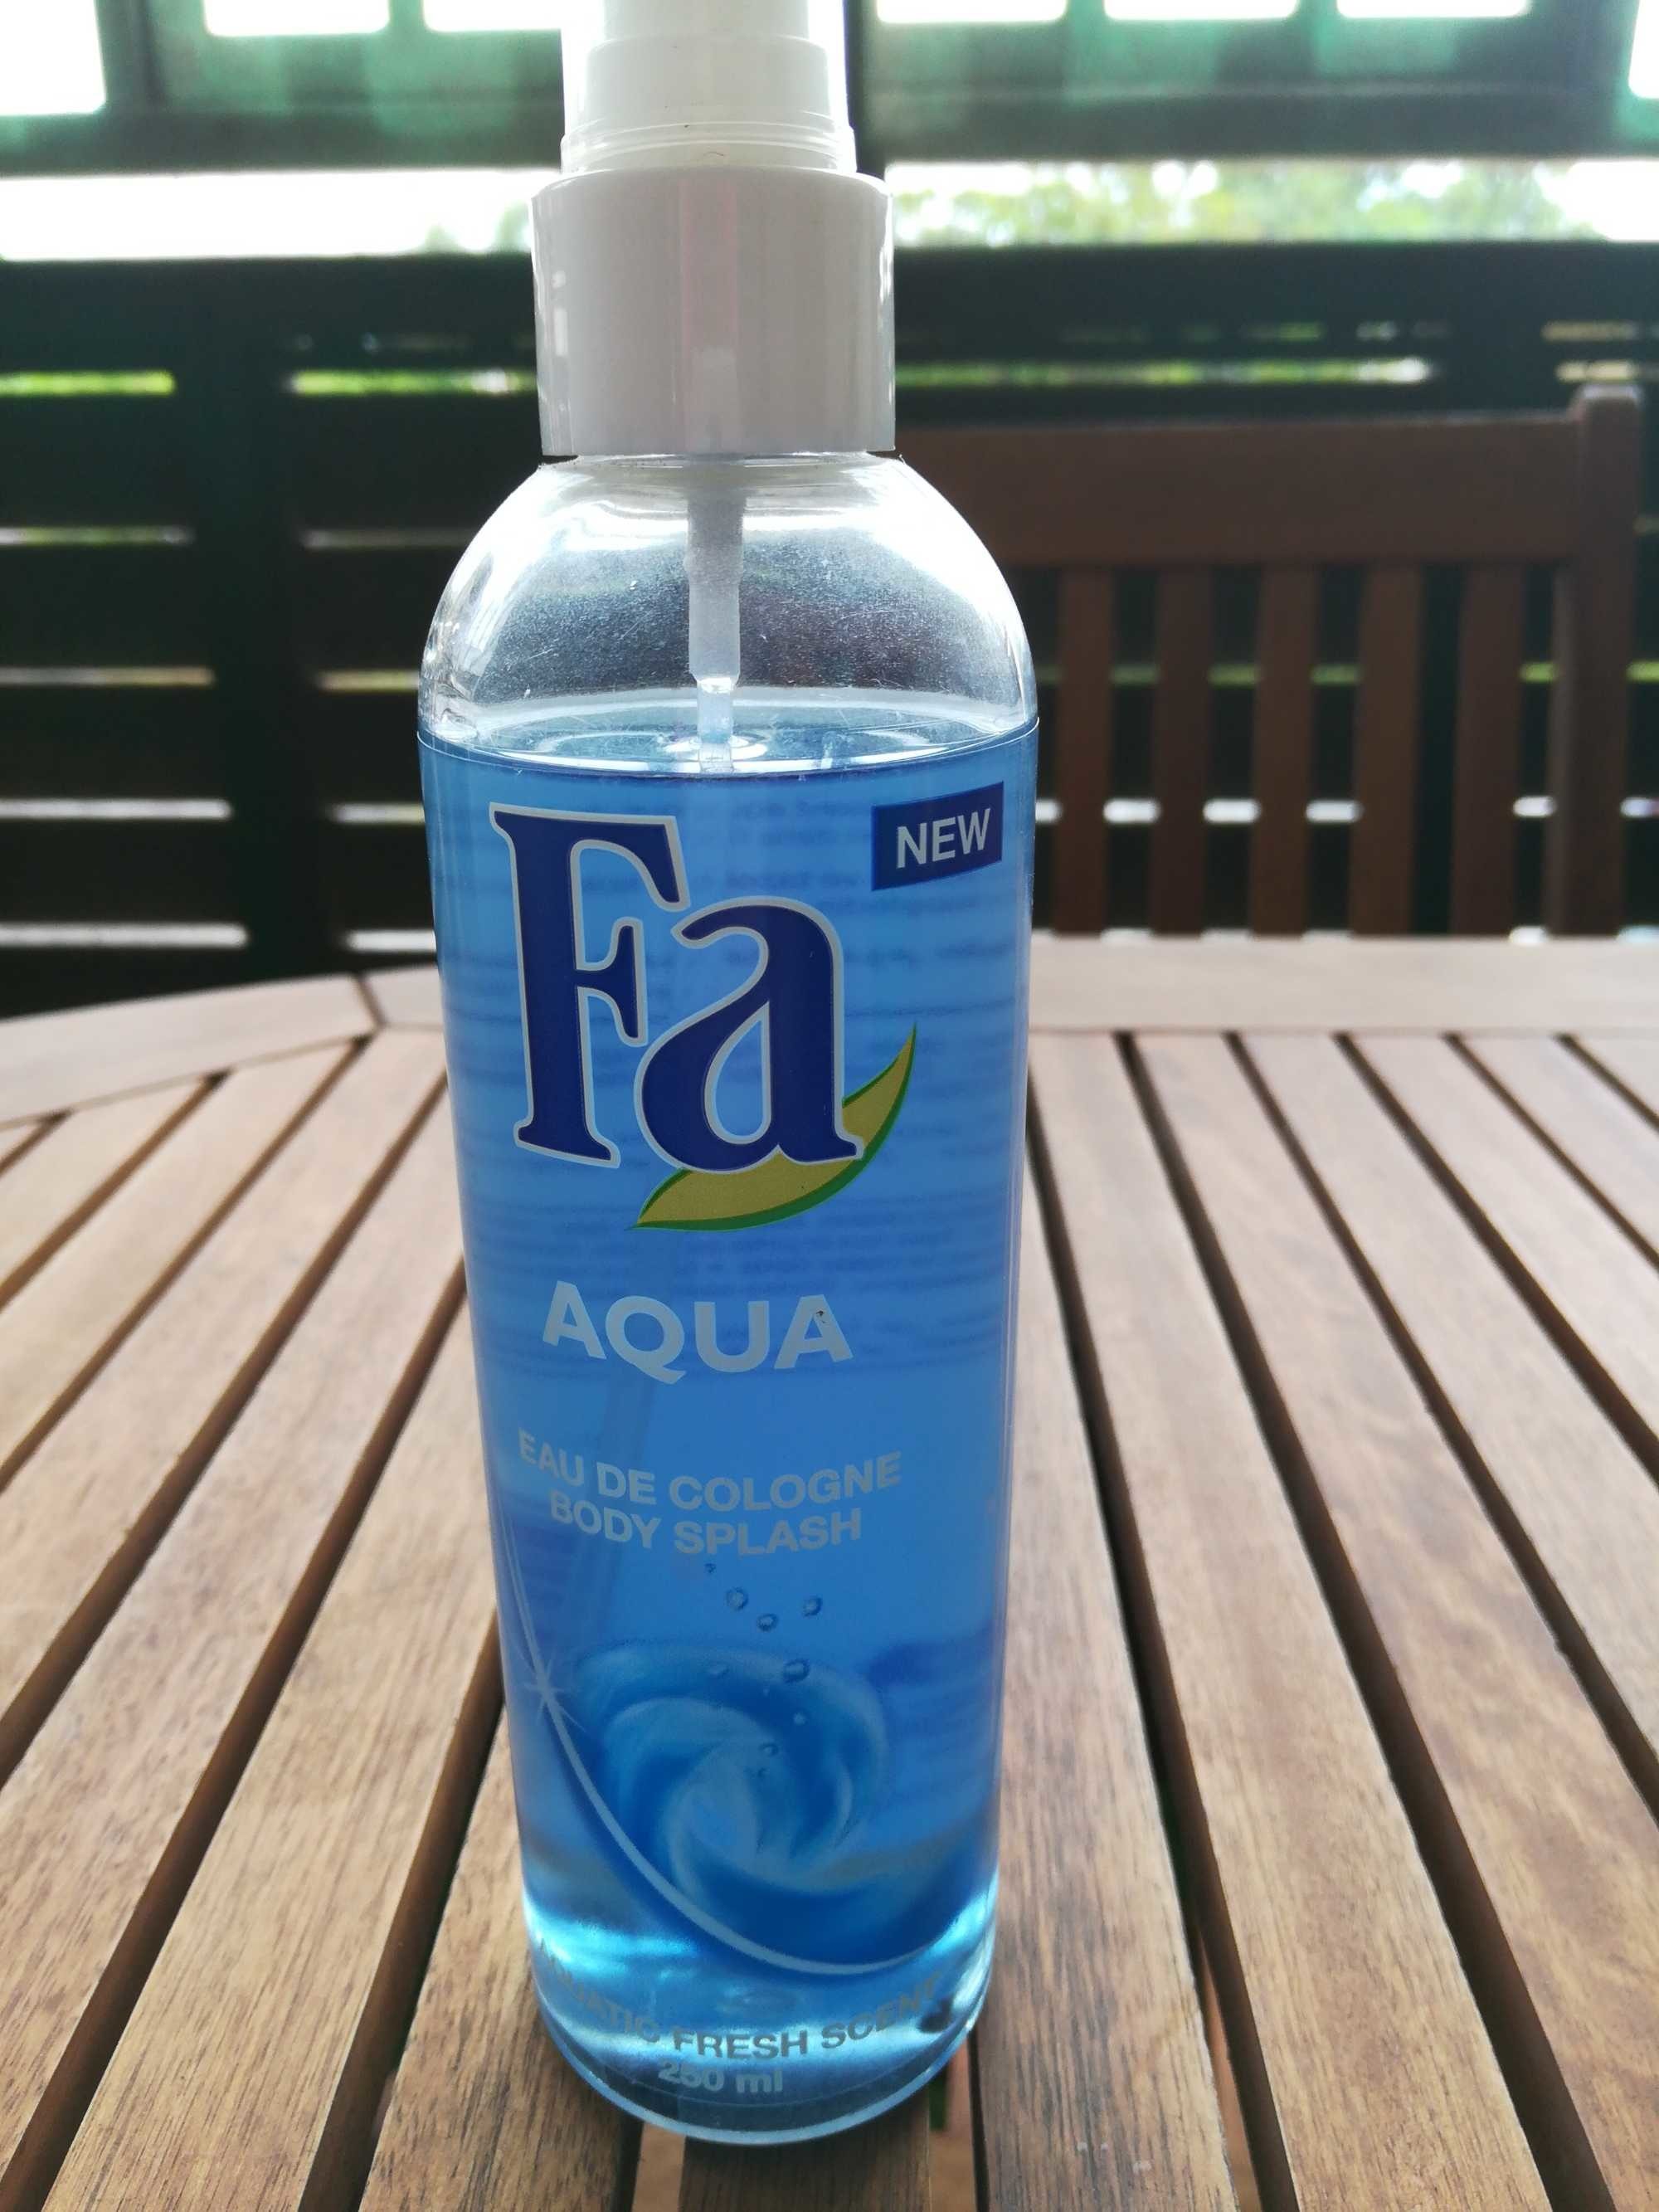 Aqua eau de cologne - 製品 - fr